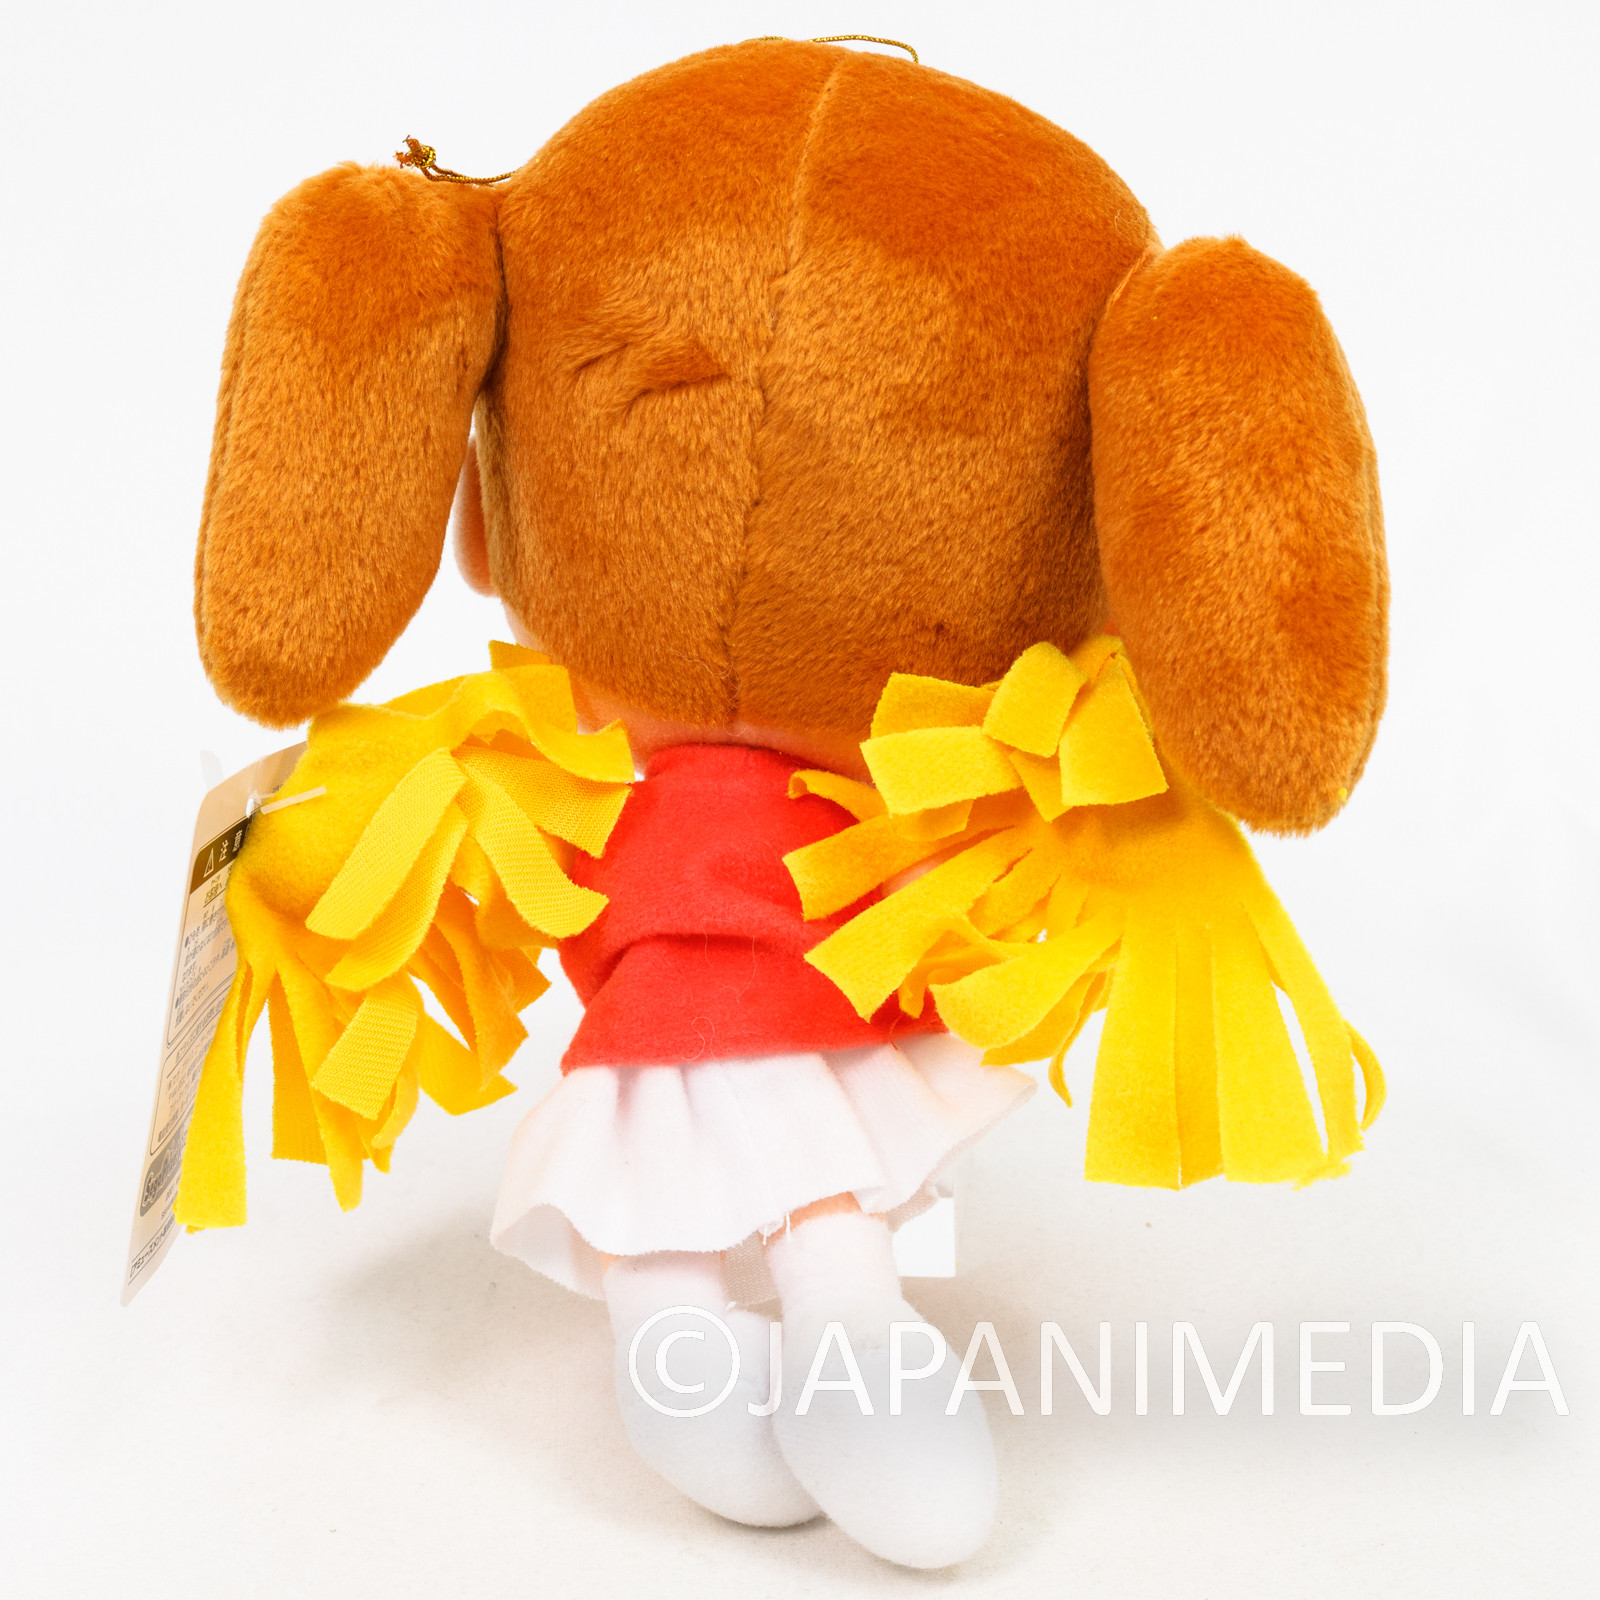 Azumanga Daioh Chiyo Cheerleader 8" Plush Doll SEGA KIYOHIKO AZUMA